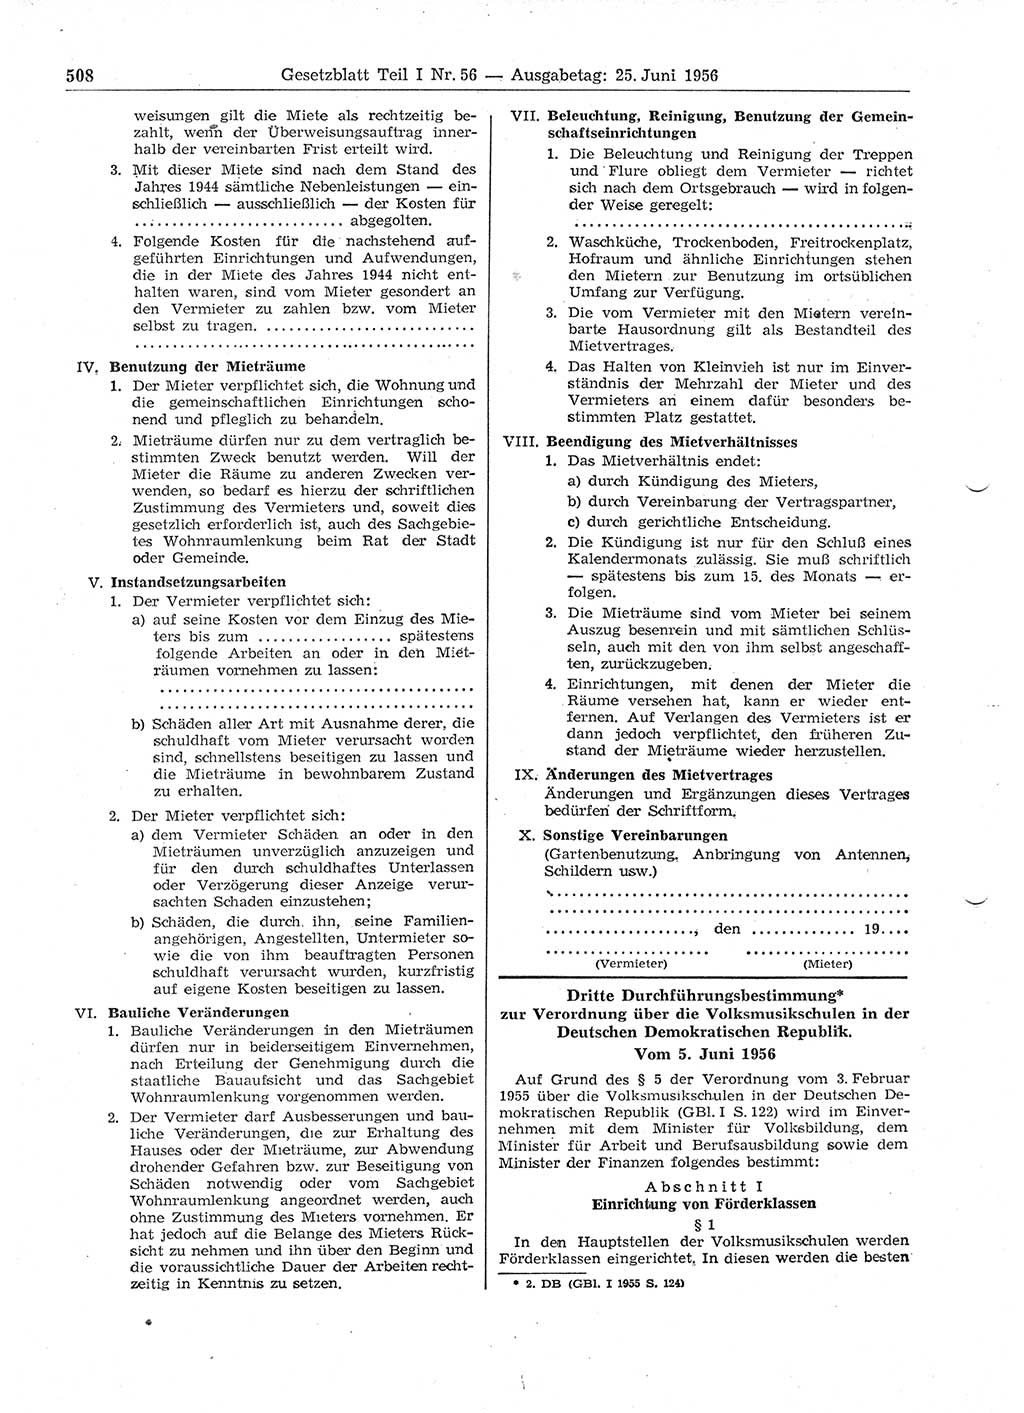 Gesetzblatt (GBl.) der Deutschen Demokratischen Republik (DDR) Teil Ⅰ 1956, Seite 508 (GBl. DDR Ⅰ 1956, S. 508)